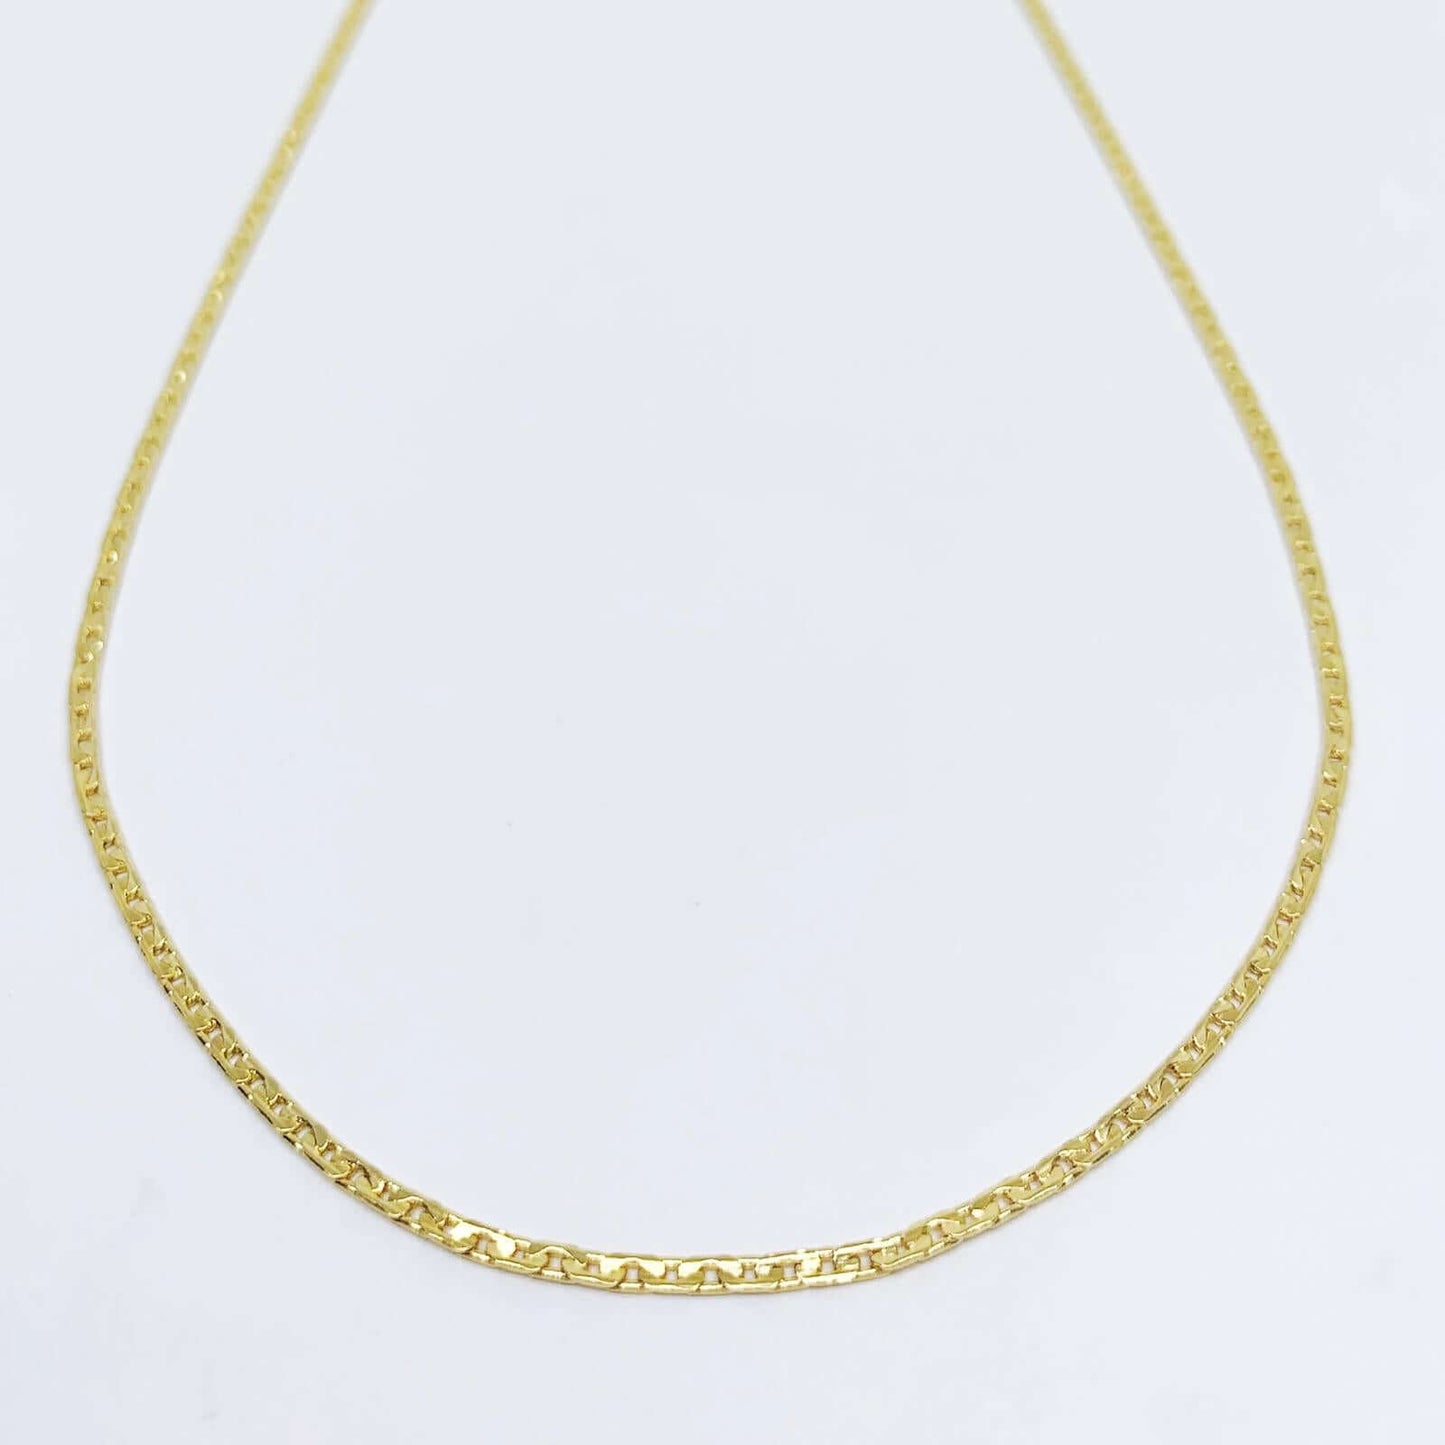 GoldFi 18k Gold Filled Black Flower Earrings Pendant Necklace Set